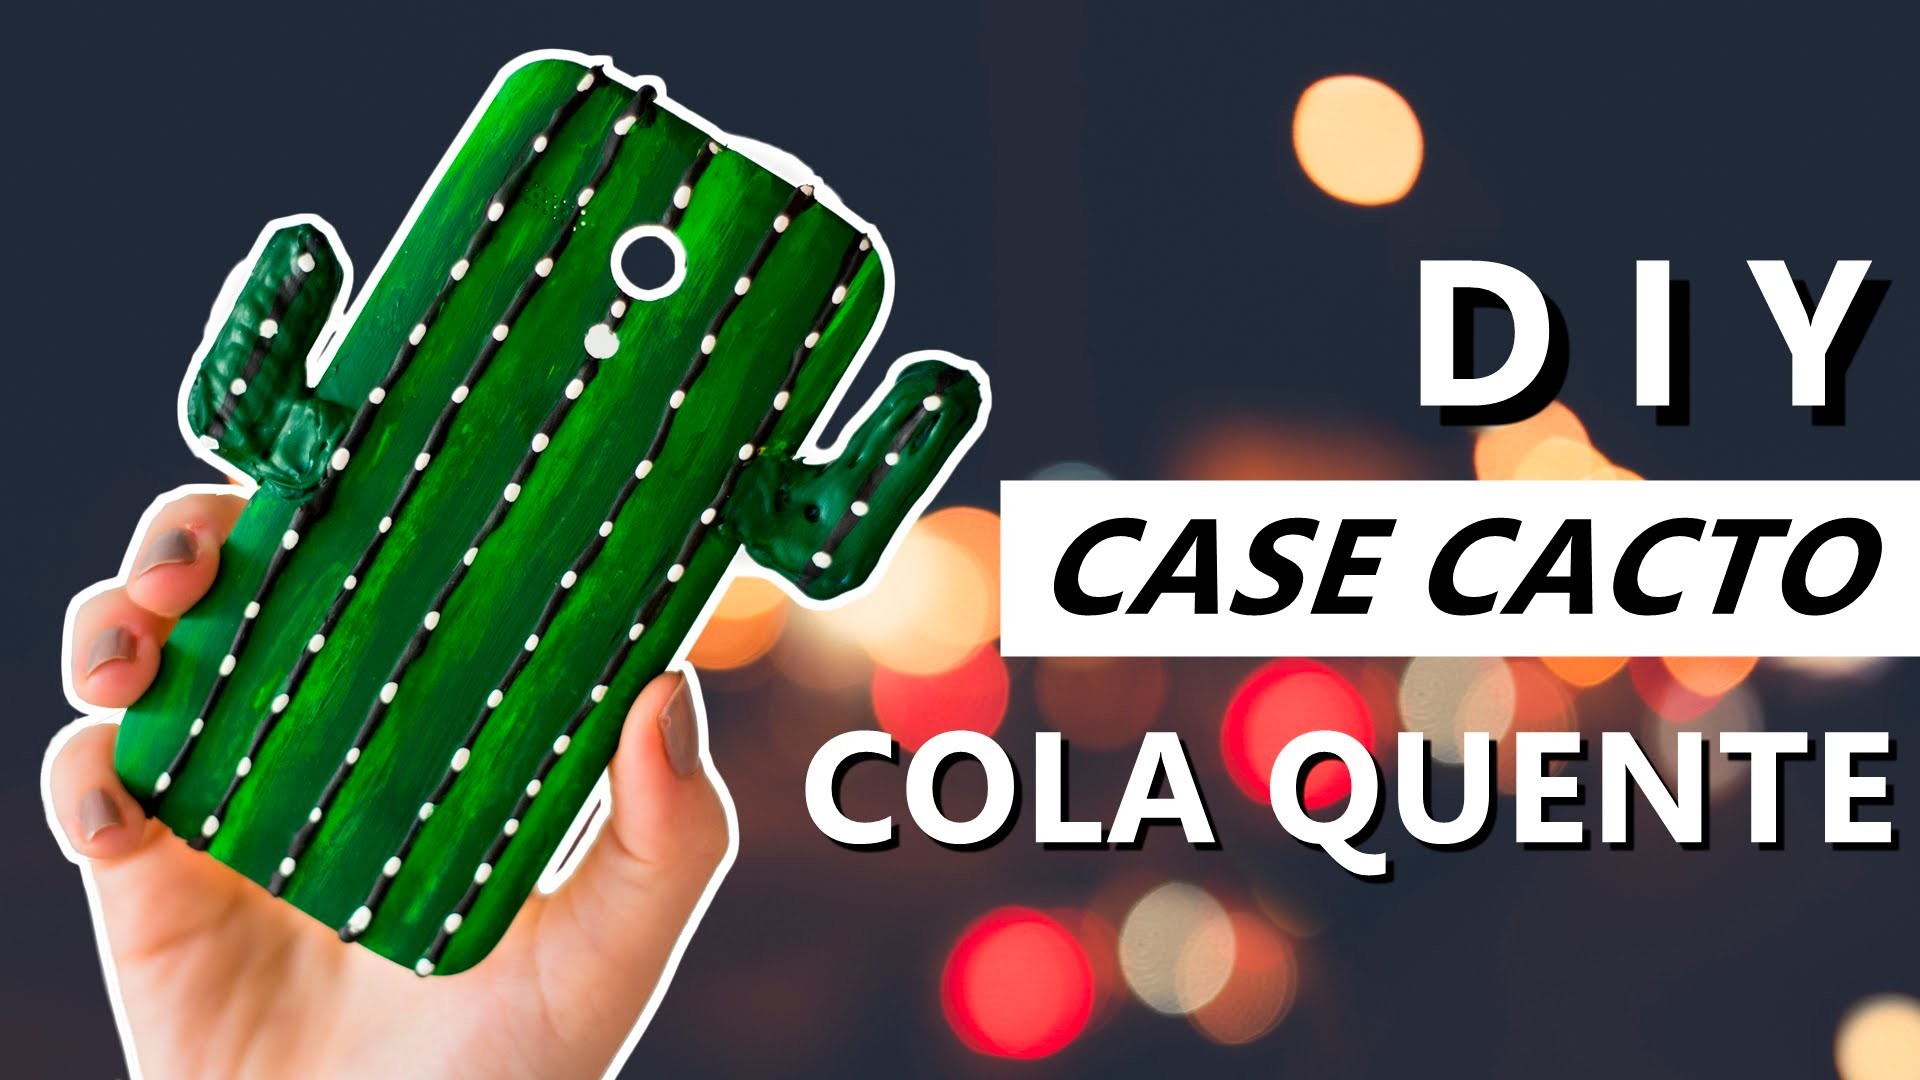 DIY Capinha de COLA QUENTE Cacto - Phone Case - Como fazer